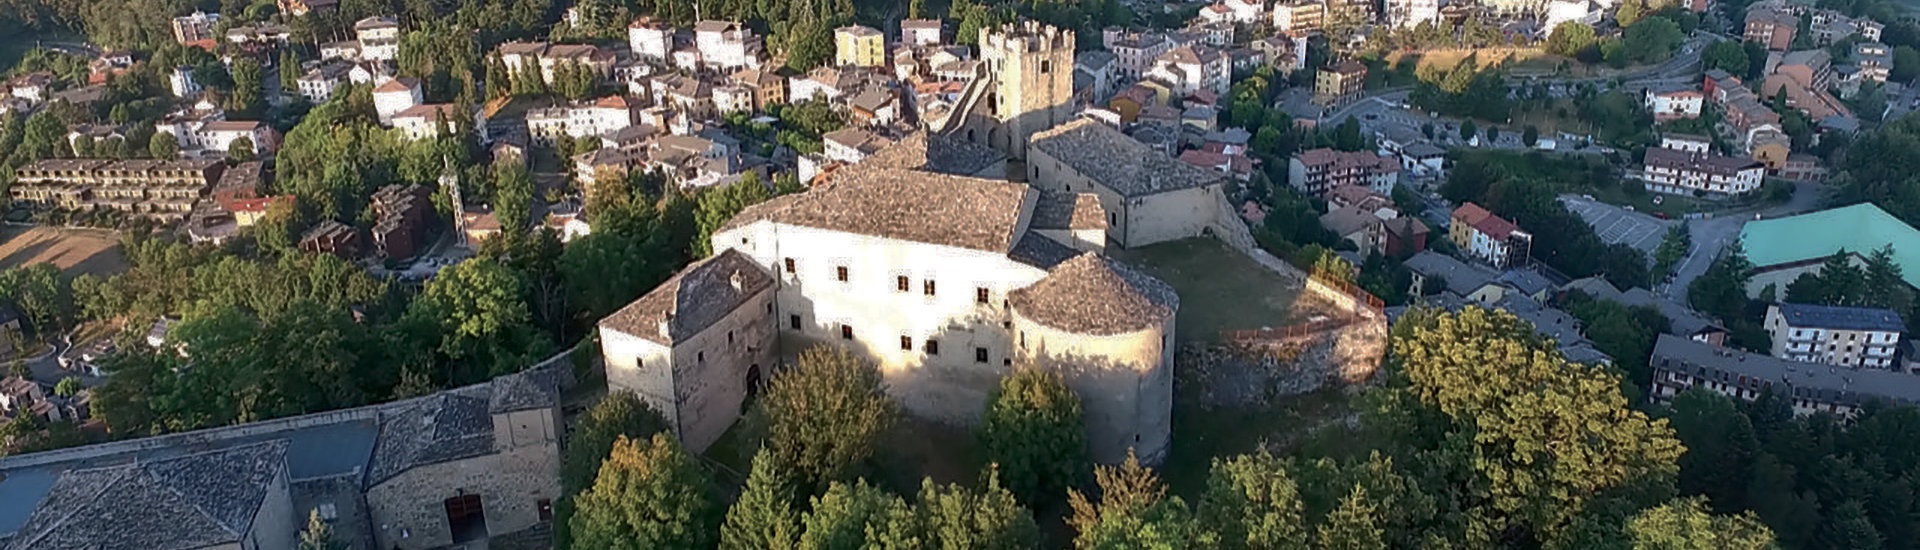 Rocca di Sestola - Panoramica aerea Castello di Sestola photo credits: |Eugenio Soliani| - Gestore Castello